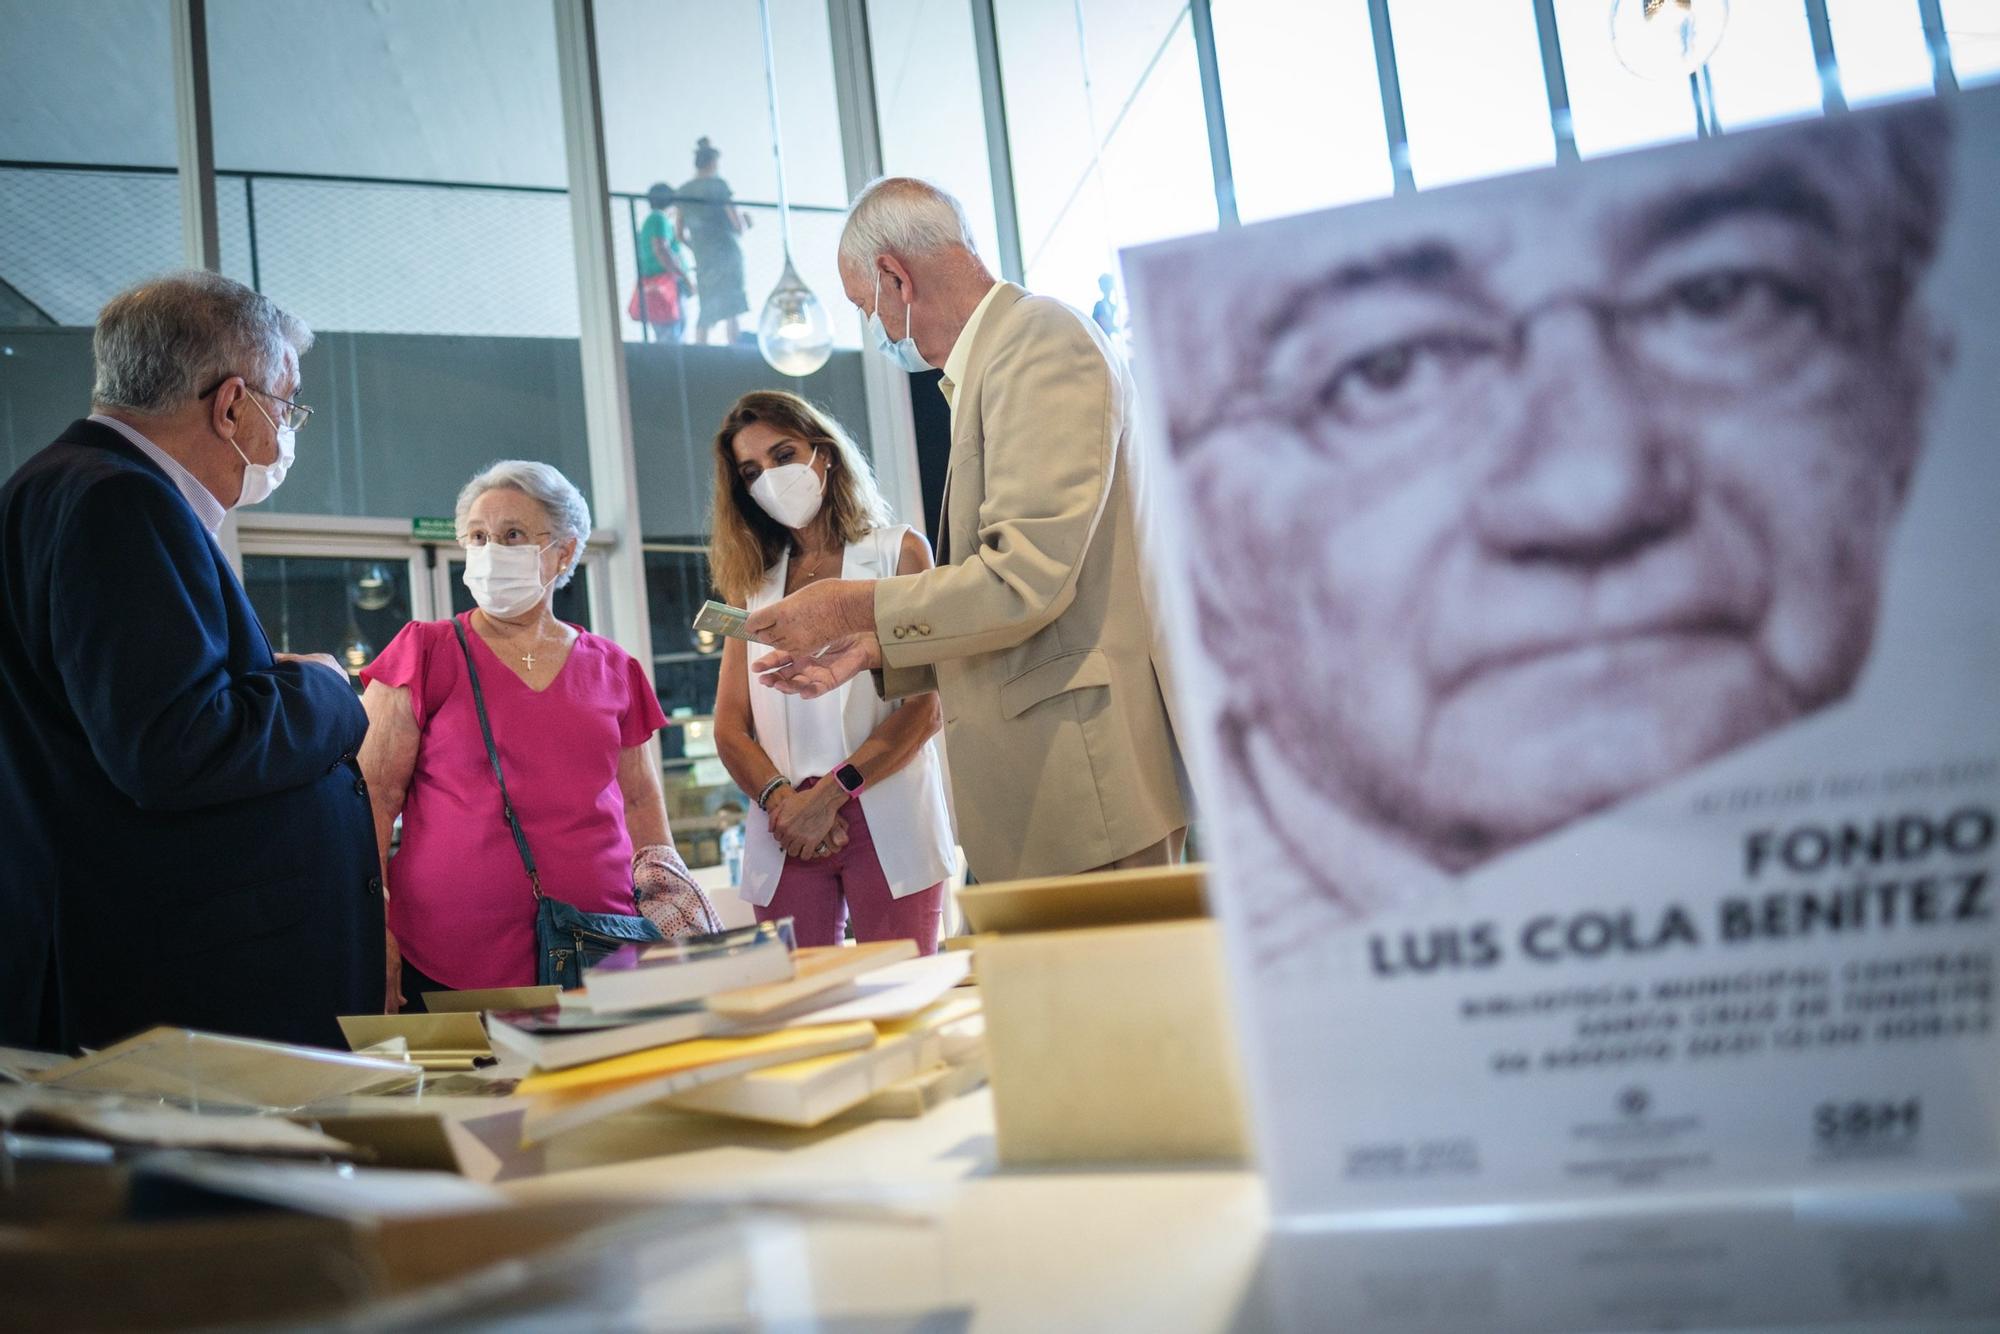 Donación a la biblioteca municipal de los fondos de Luis Cola